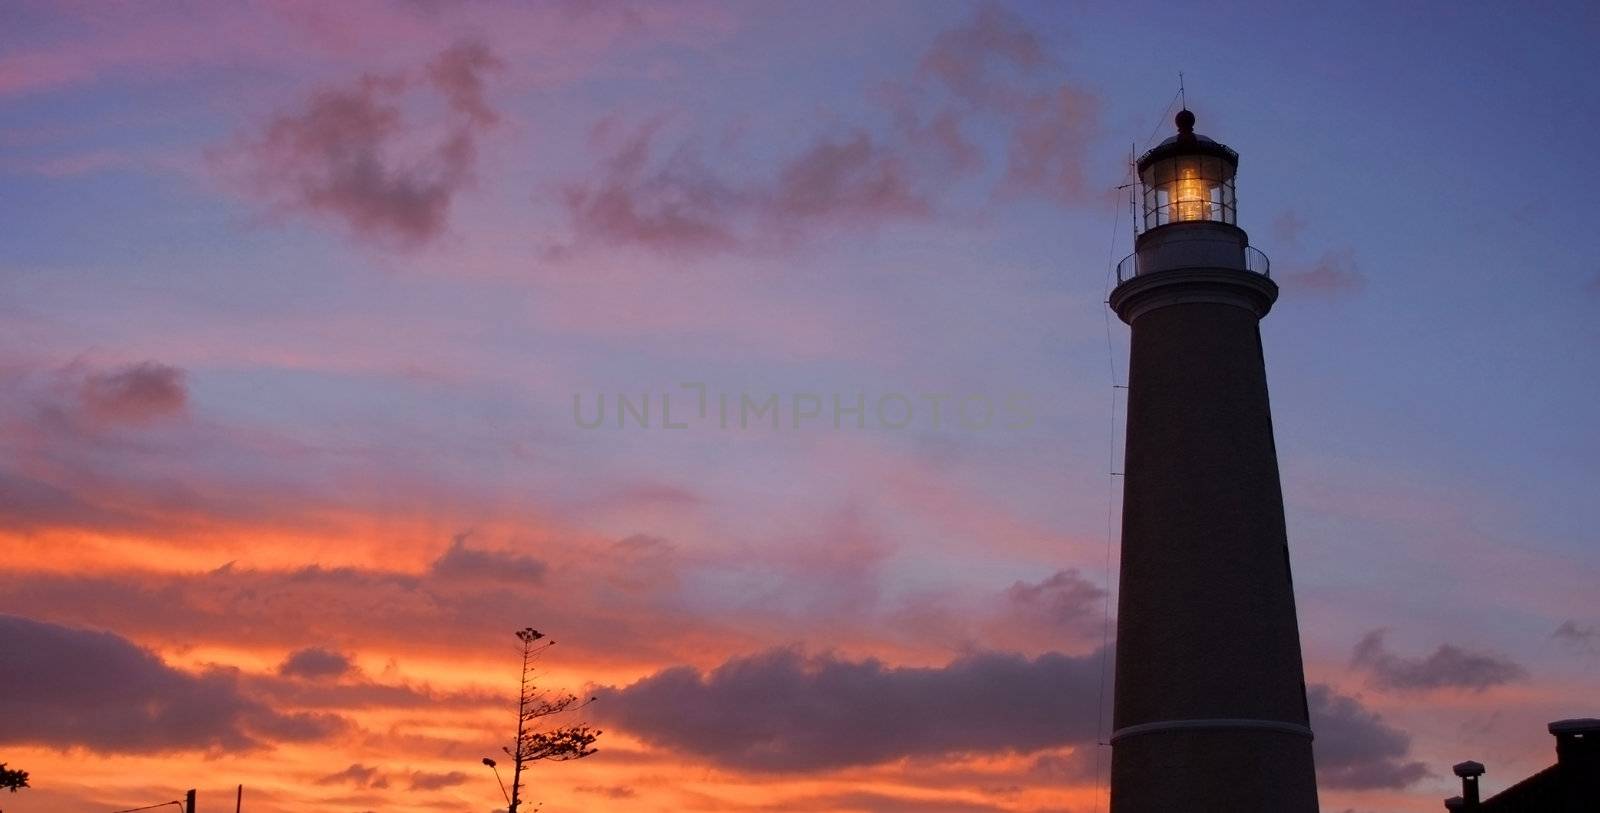 Lighthouse at dusk in Punta del Este, Uruguay